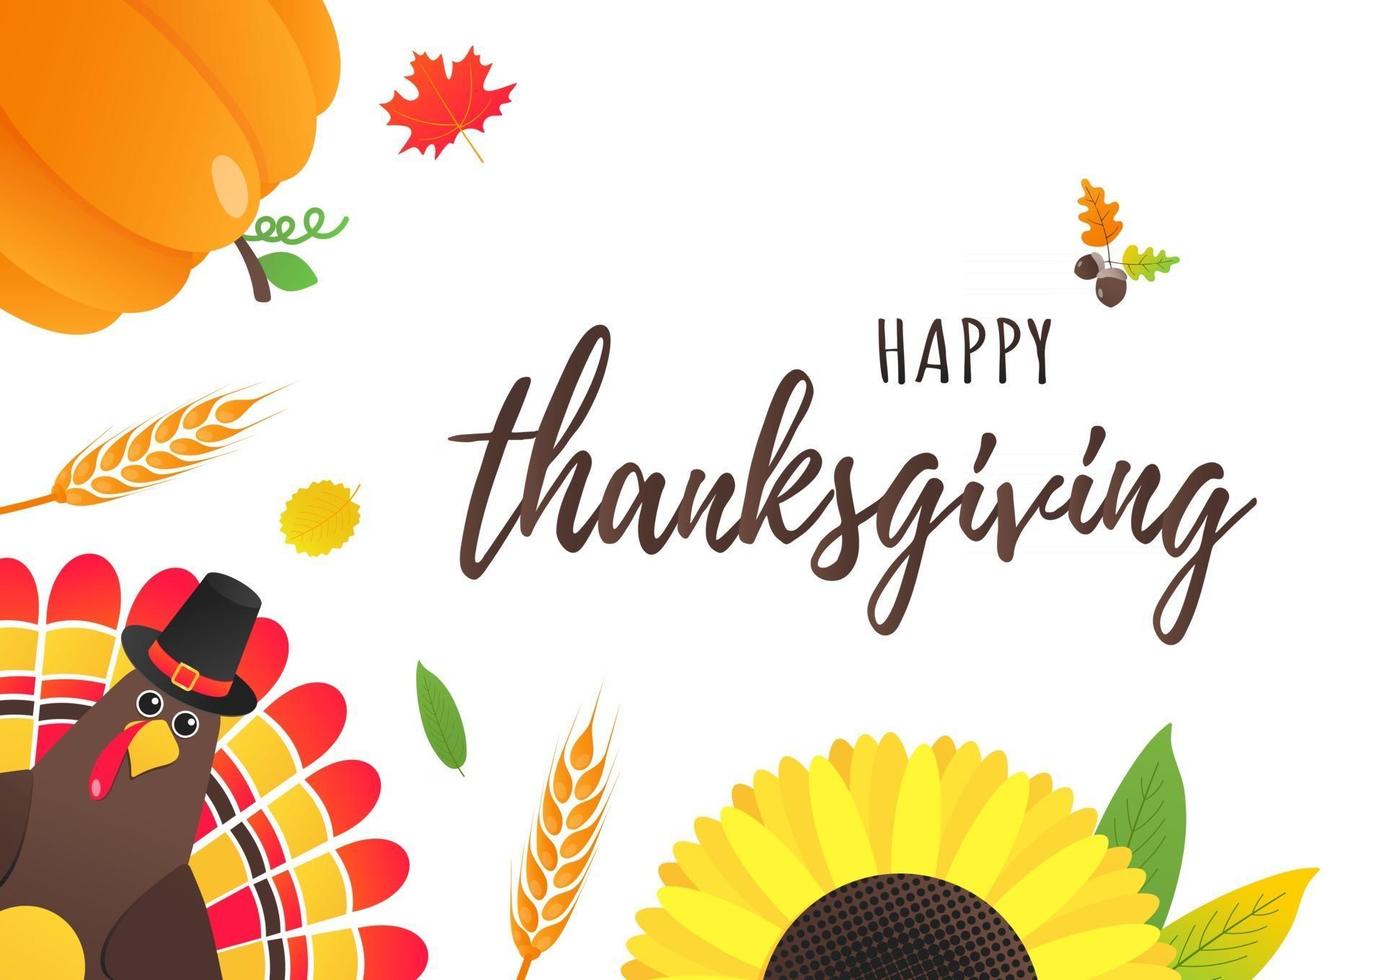 happy thanksgiving day vlakke stijl ontwerp poster vectorillustratie met kalkoen herfstbladeren zonnebloem maïs en pompoen kalkoen met hoed en gekleurde veren vieren vakantie vector